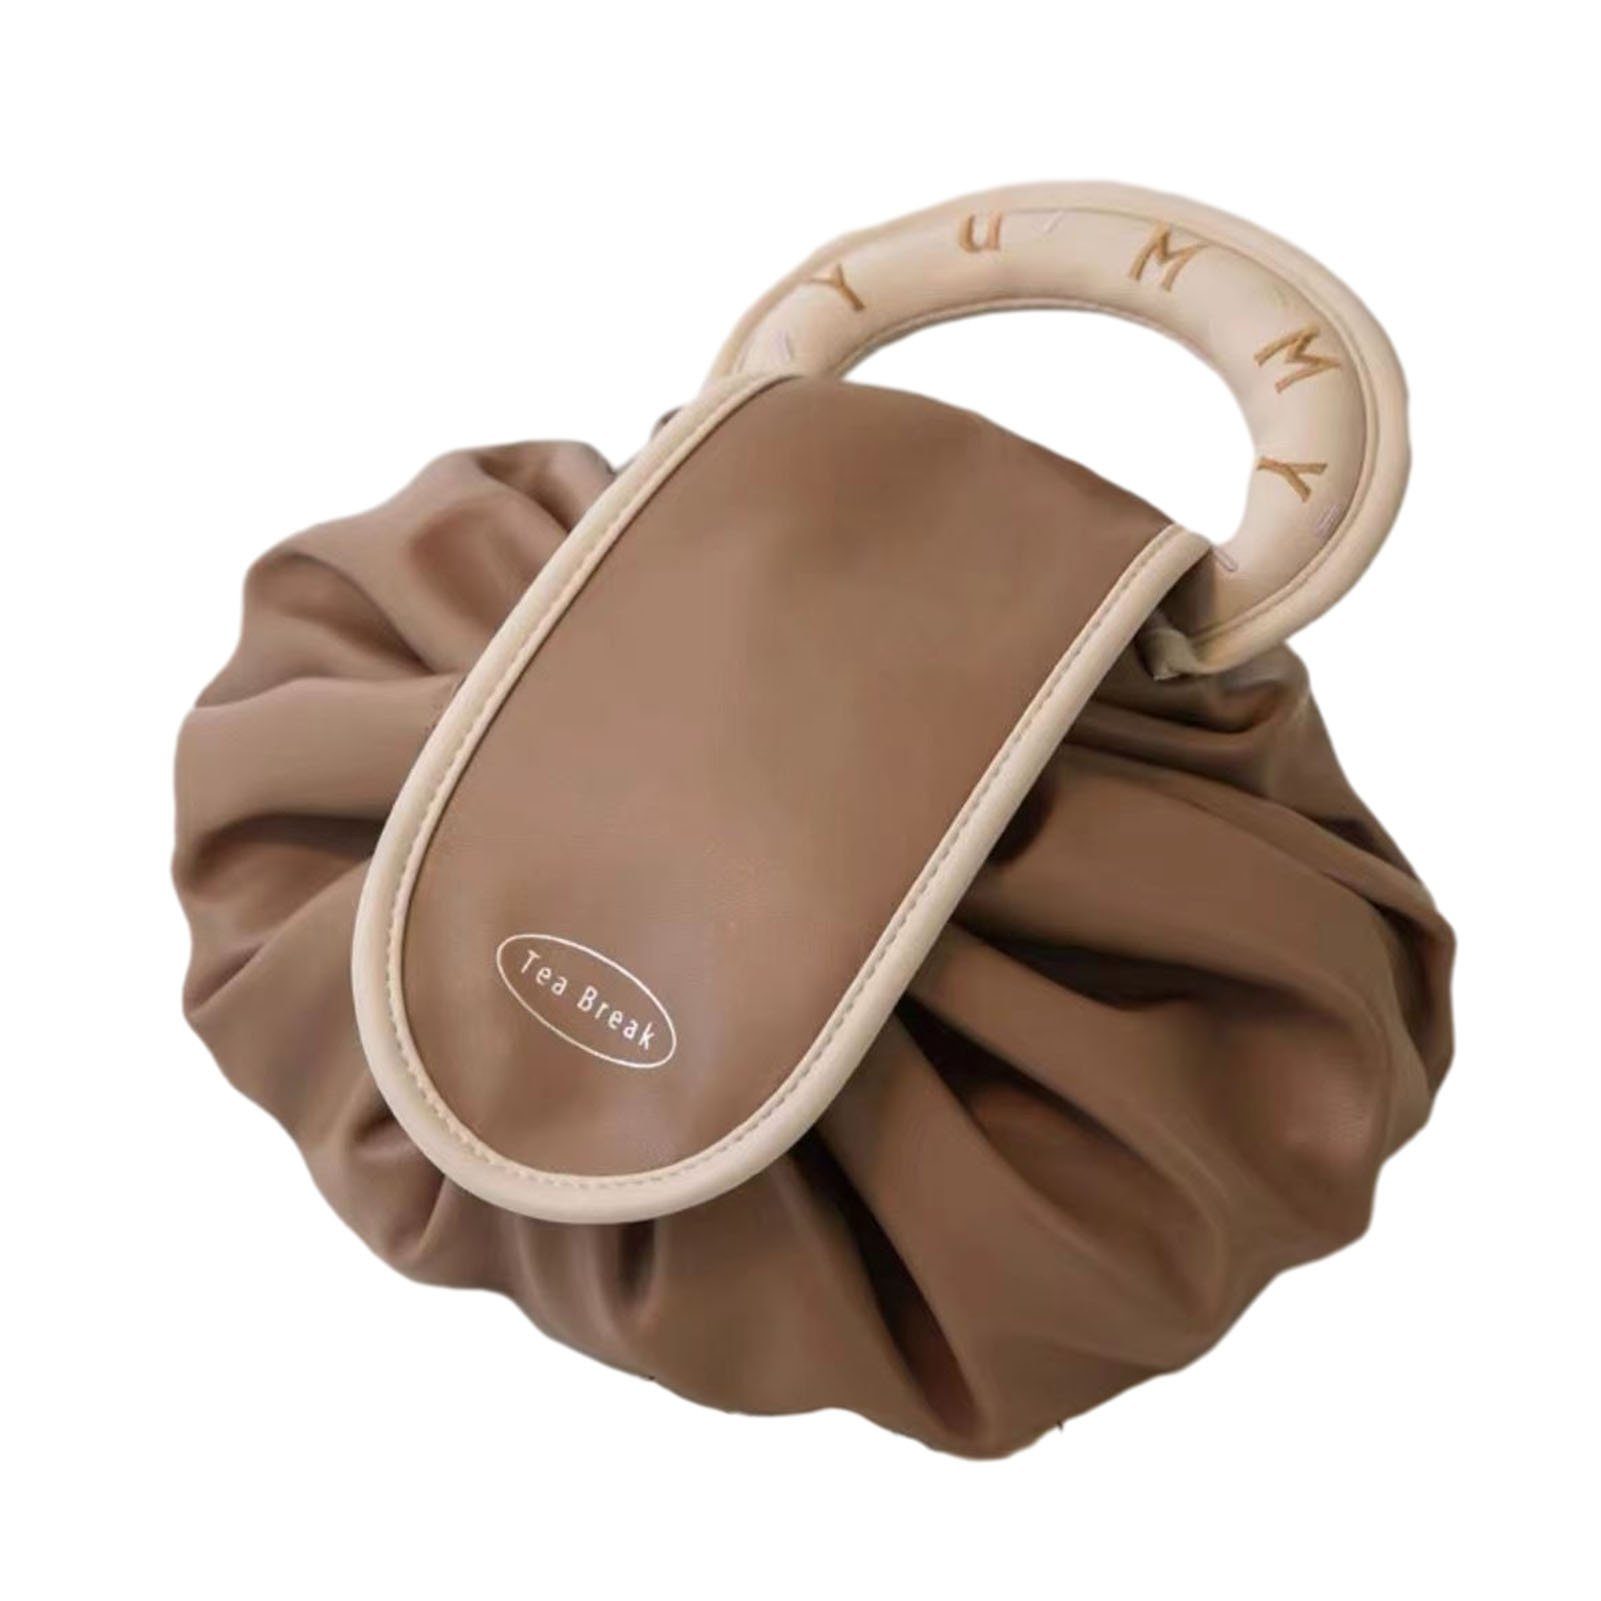 Make-up-Tasche Blusmart Griff, Multifunktionale Tragbare Mit braun Kordelzug Cartbag Und